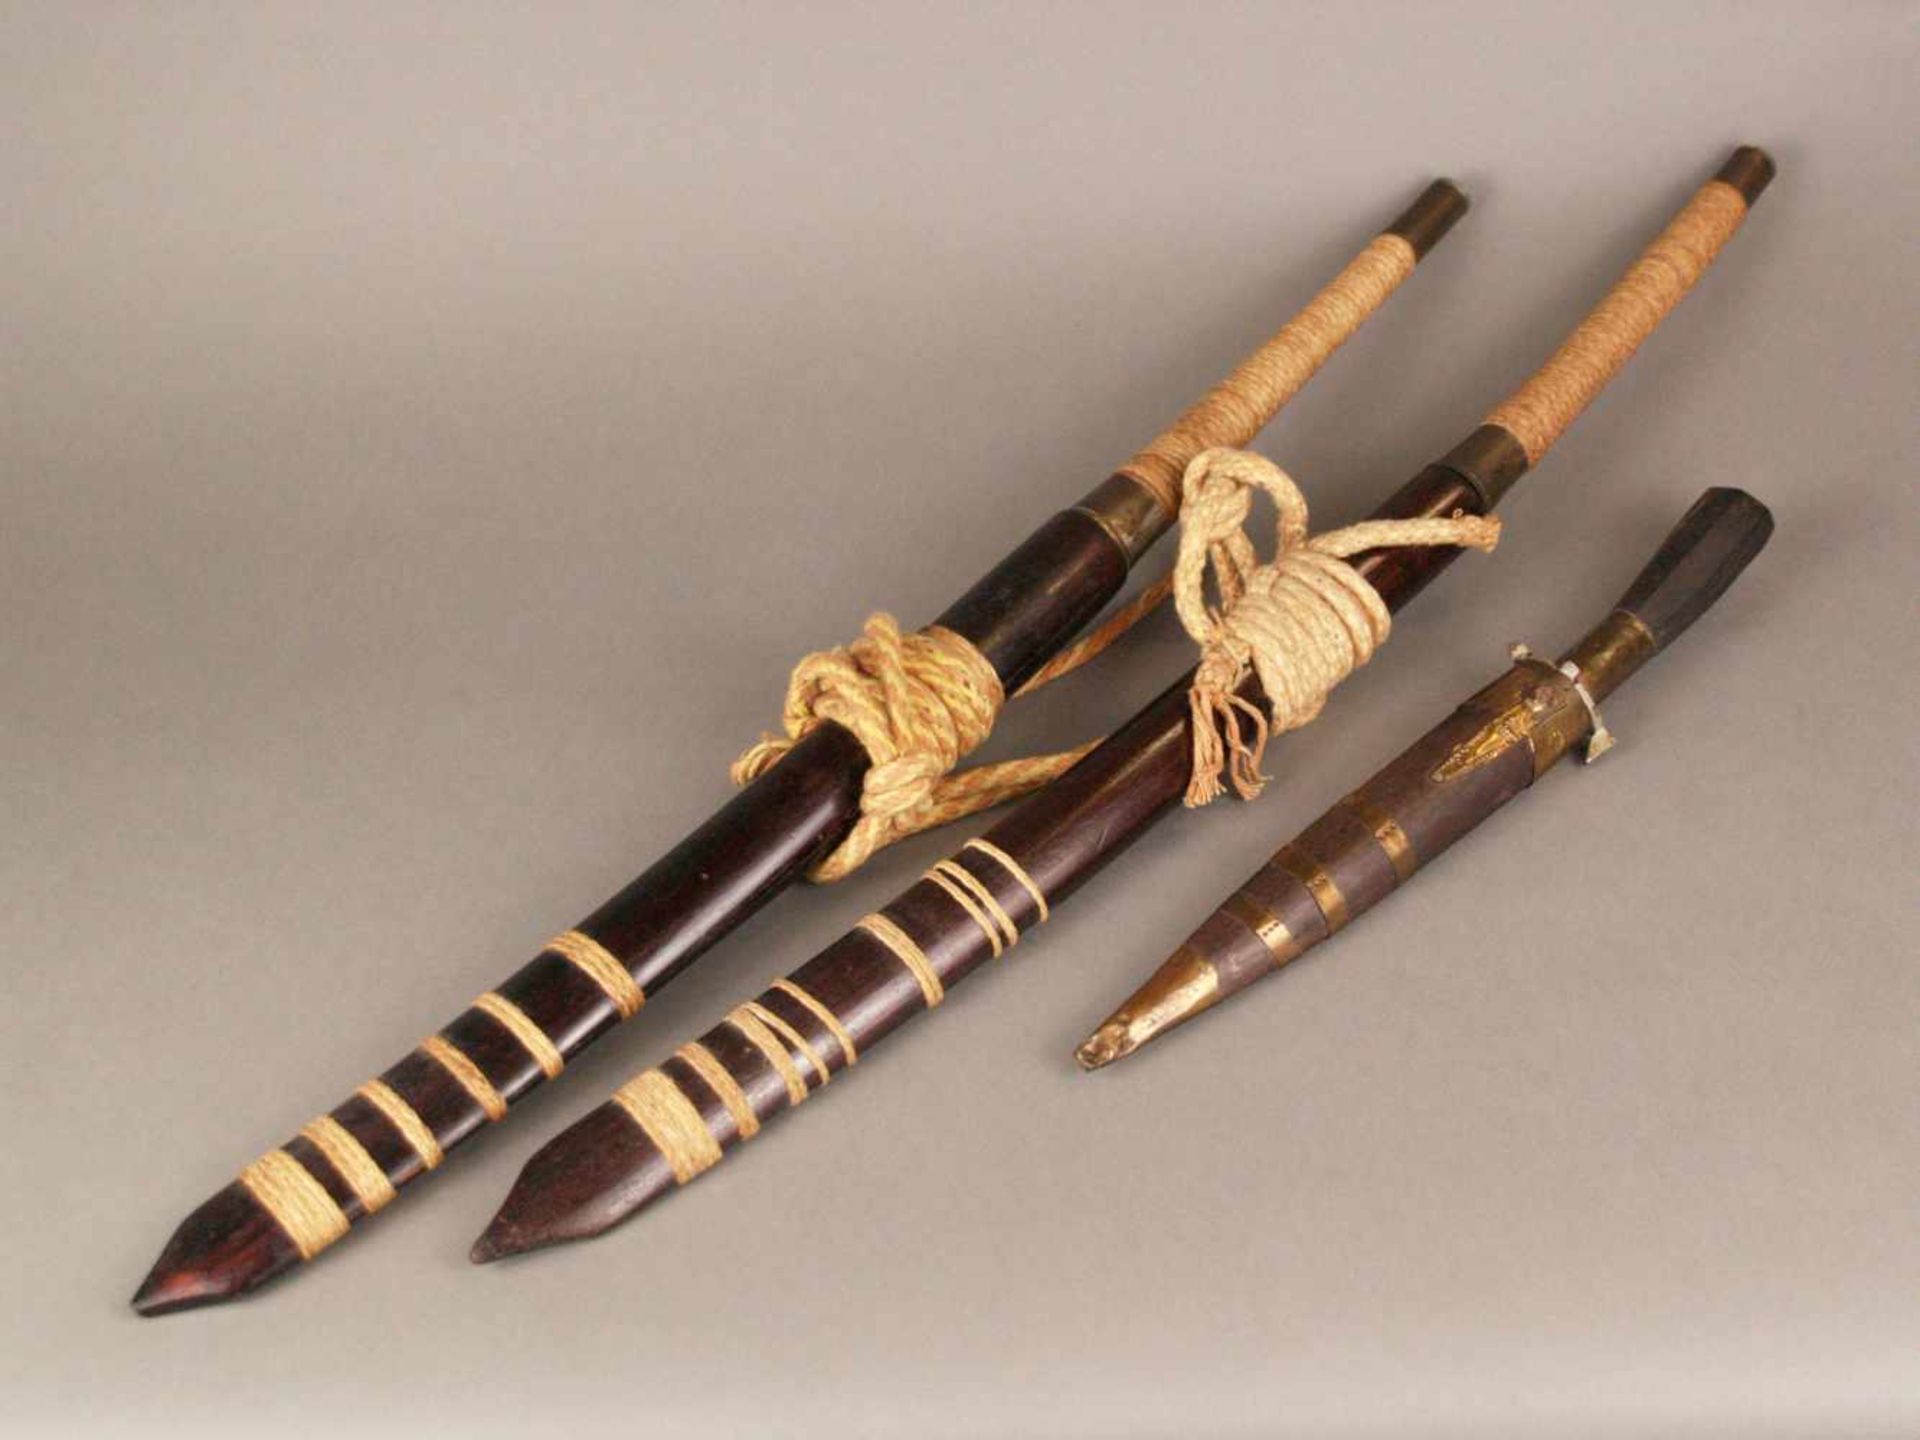 Zwei Kurzschwerter und Dolch - wohl Südostasien, Metallklinge gepunzt und graviert, Kurzschwerter